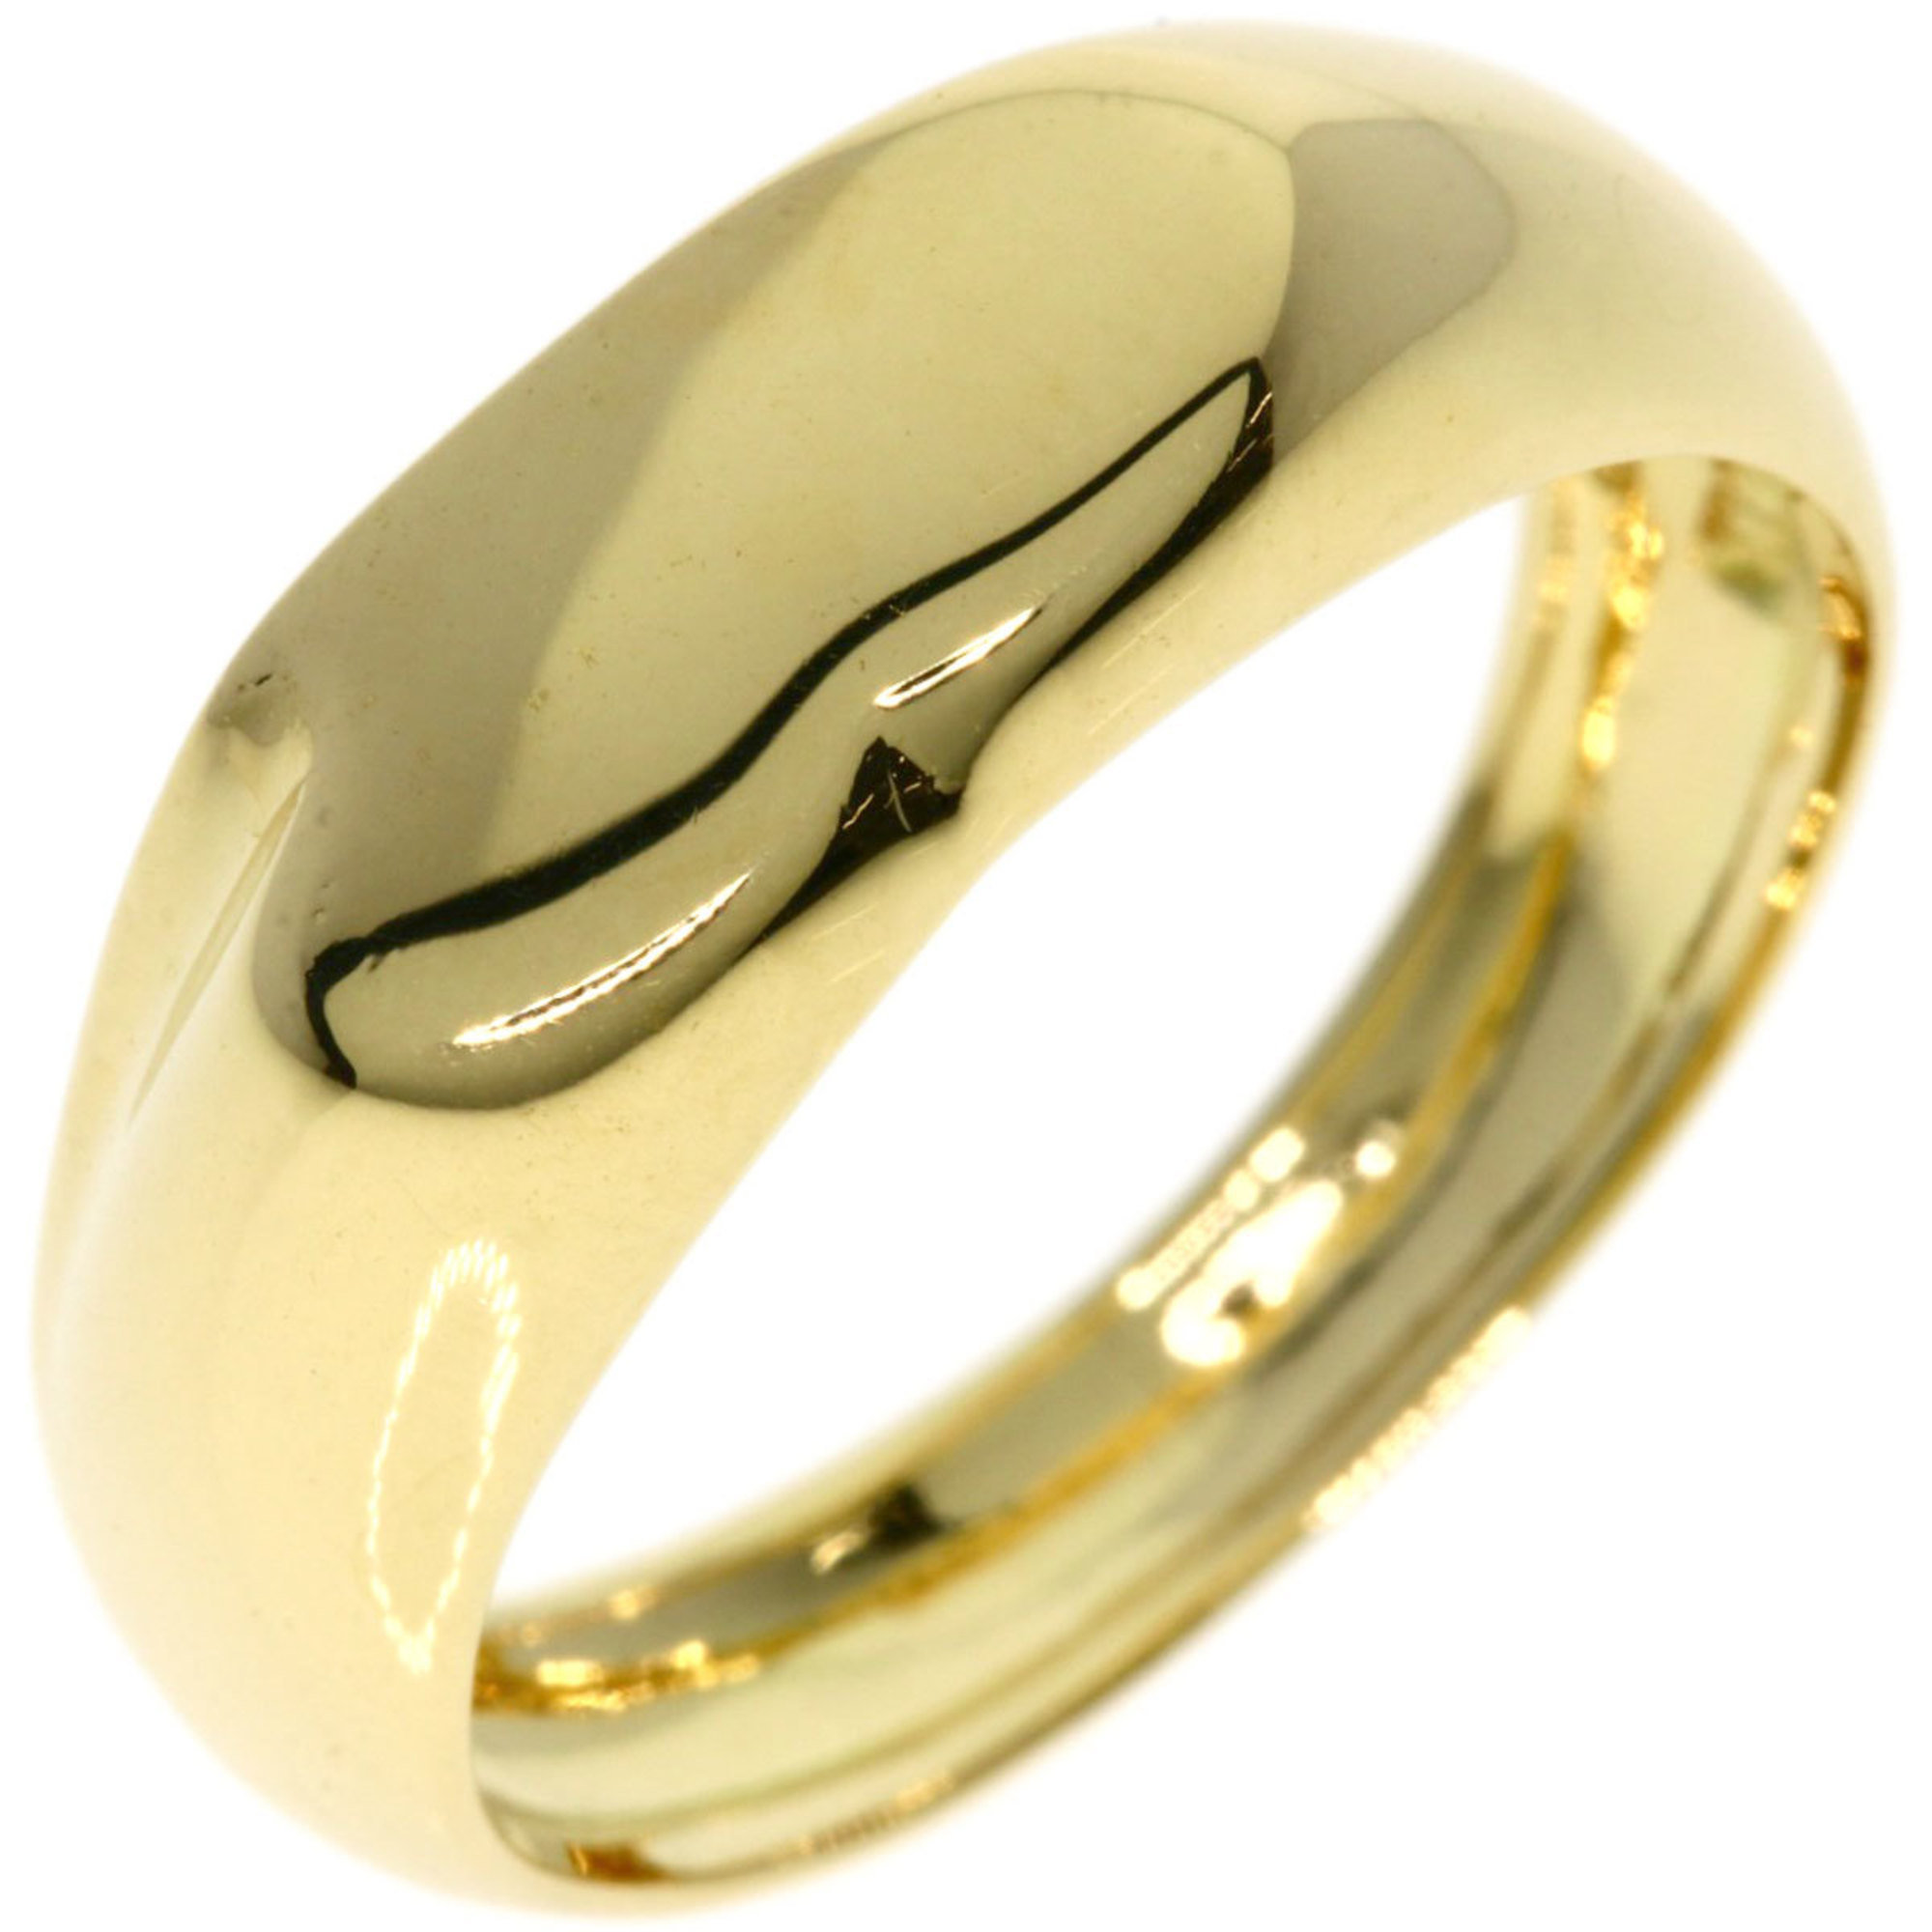 Tiffany Full Heart Ring, 18K Yellow Gold, Women's, TIFFANY&Co.